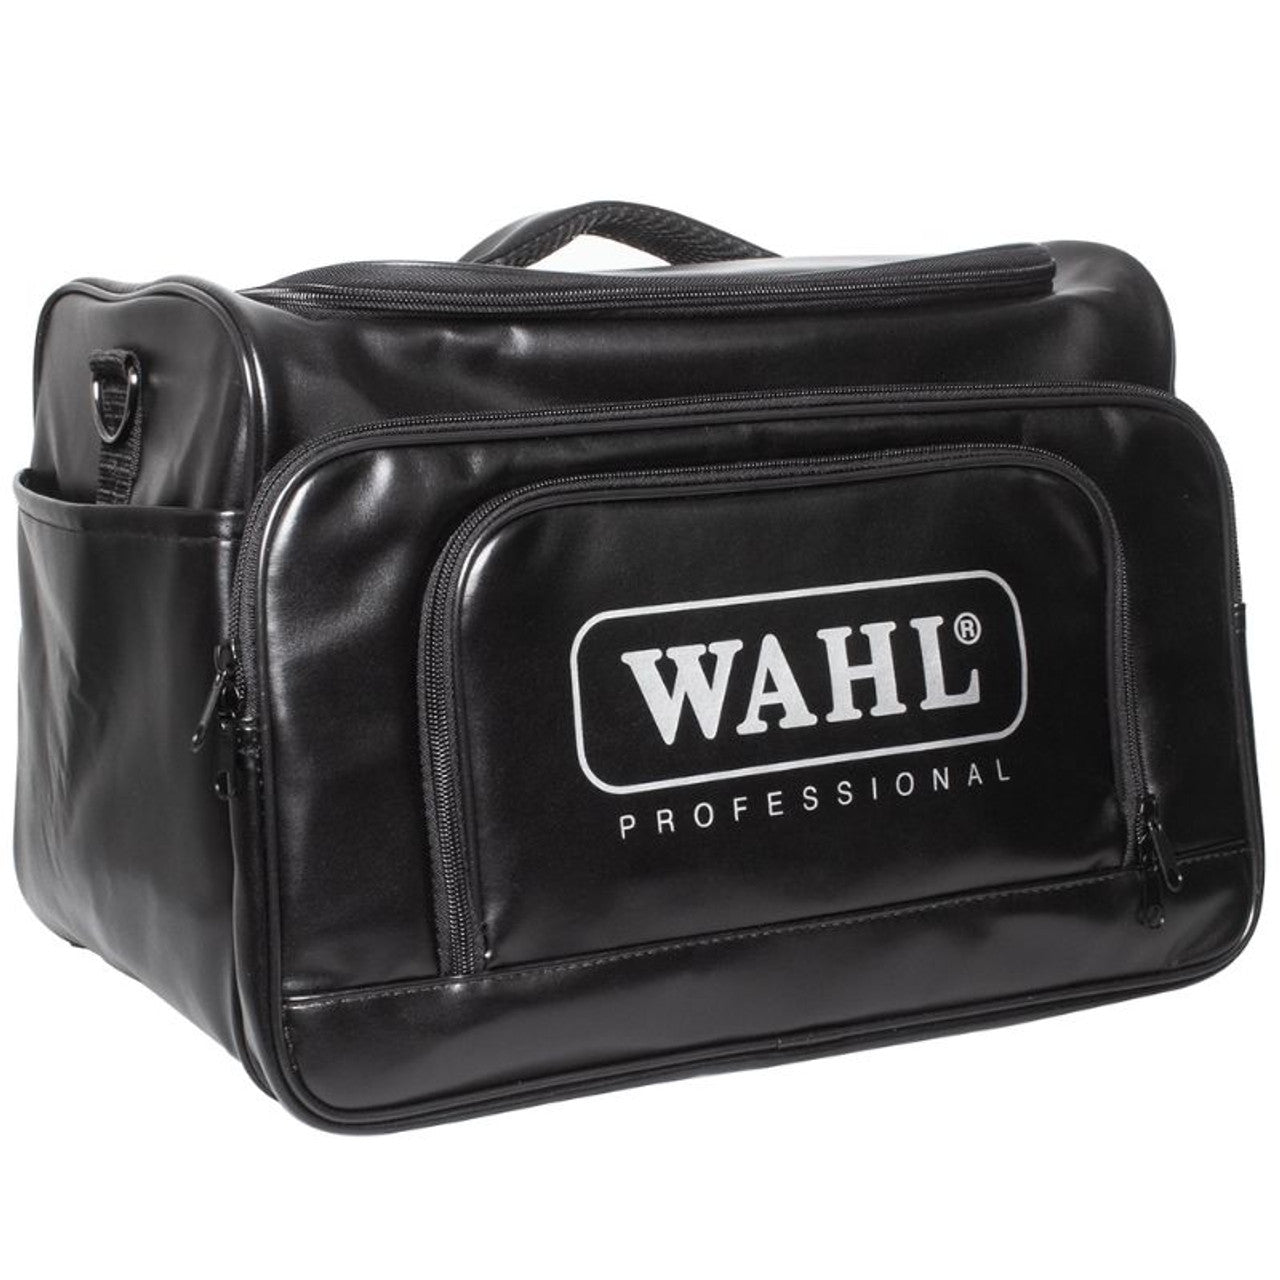 Wahl Large Tool Bag Black - WPT-LBLK